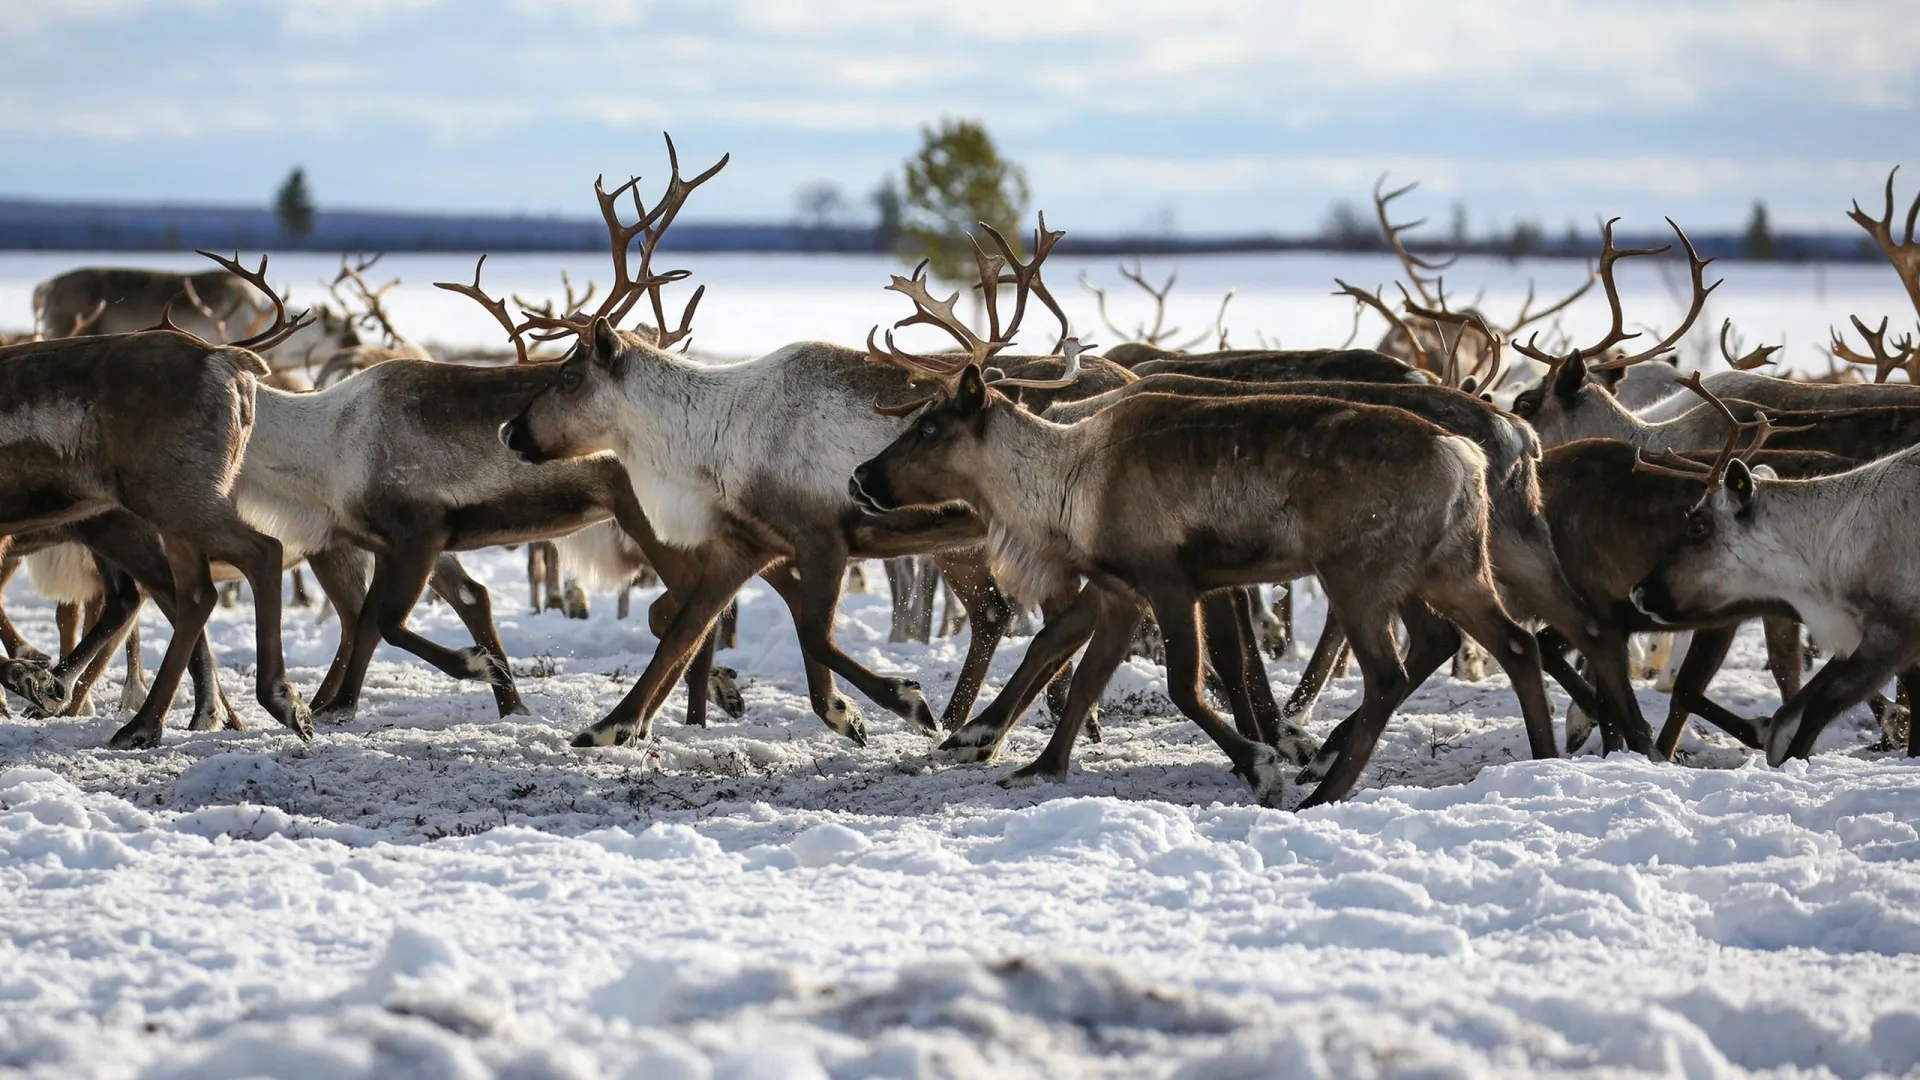 На Ямале могут создать заказник для диких оленей. Фото: Iceskatinggrizzly / Shutterstock / Fotodom